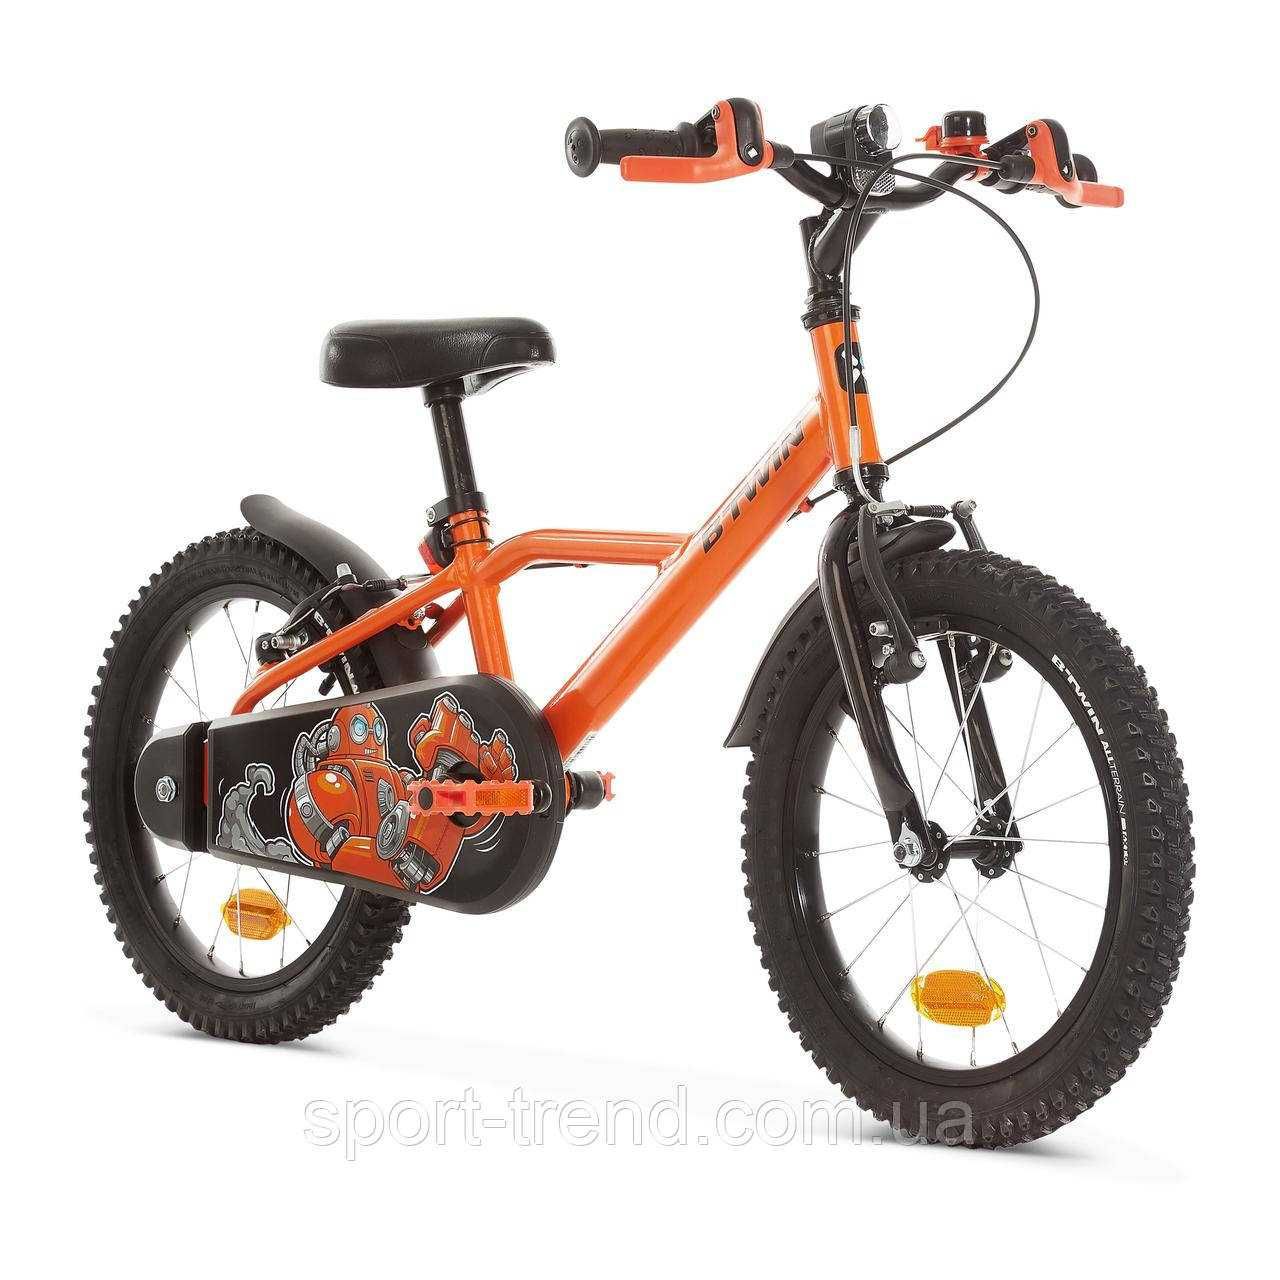 Велосипед between дитячий, колеса 16", для дітей 4,5-6 років - Robot